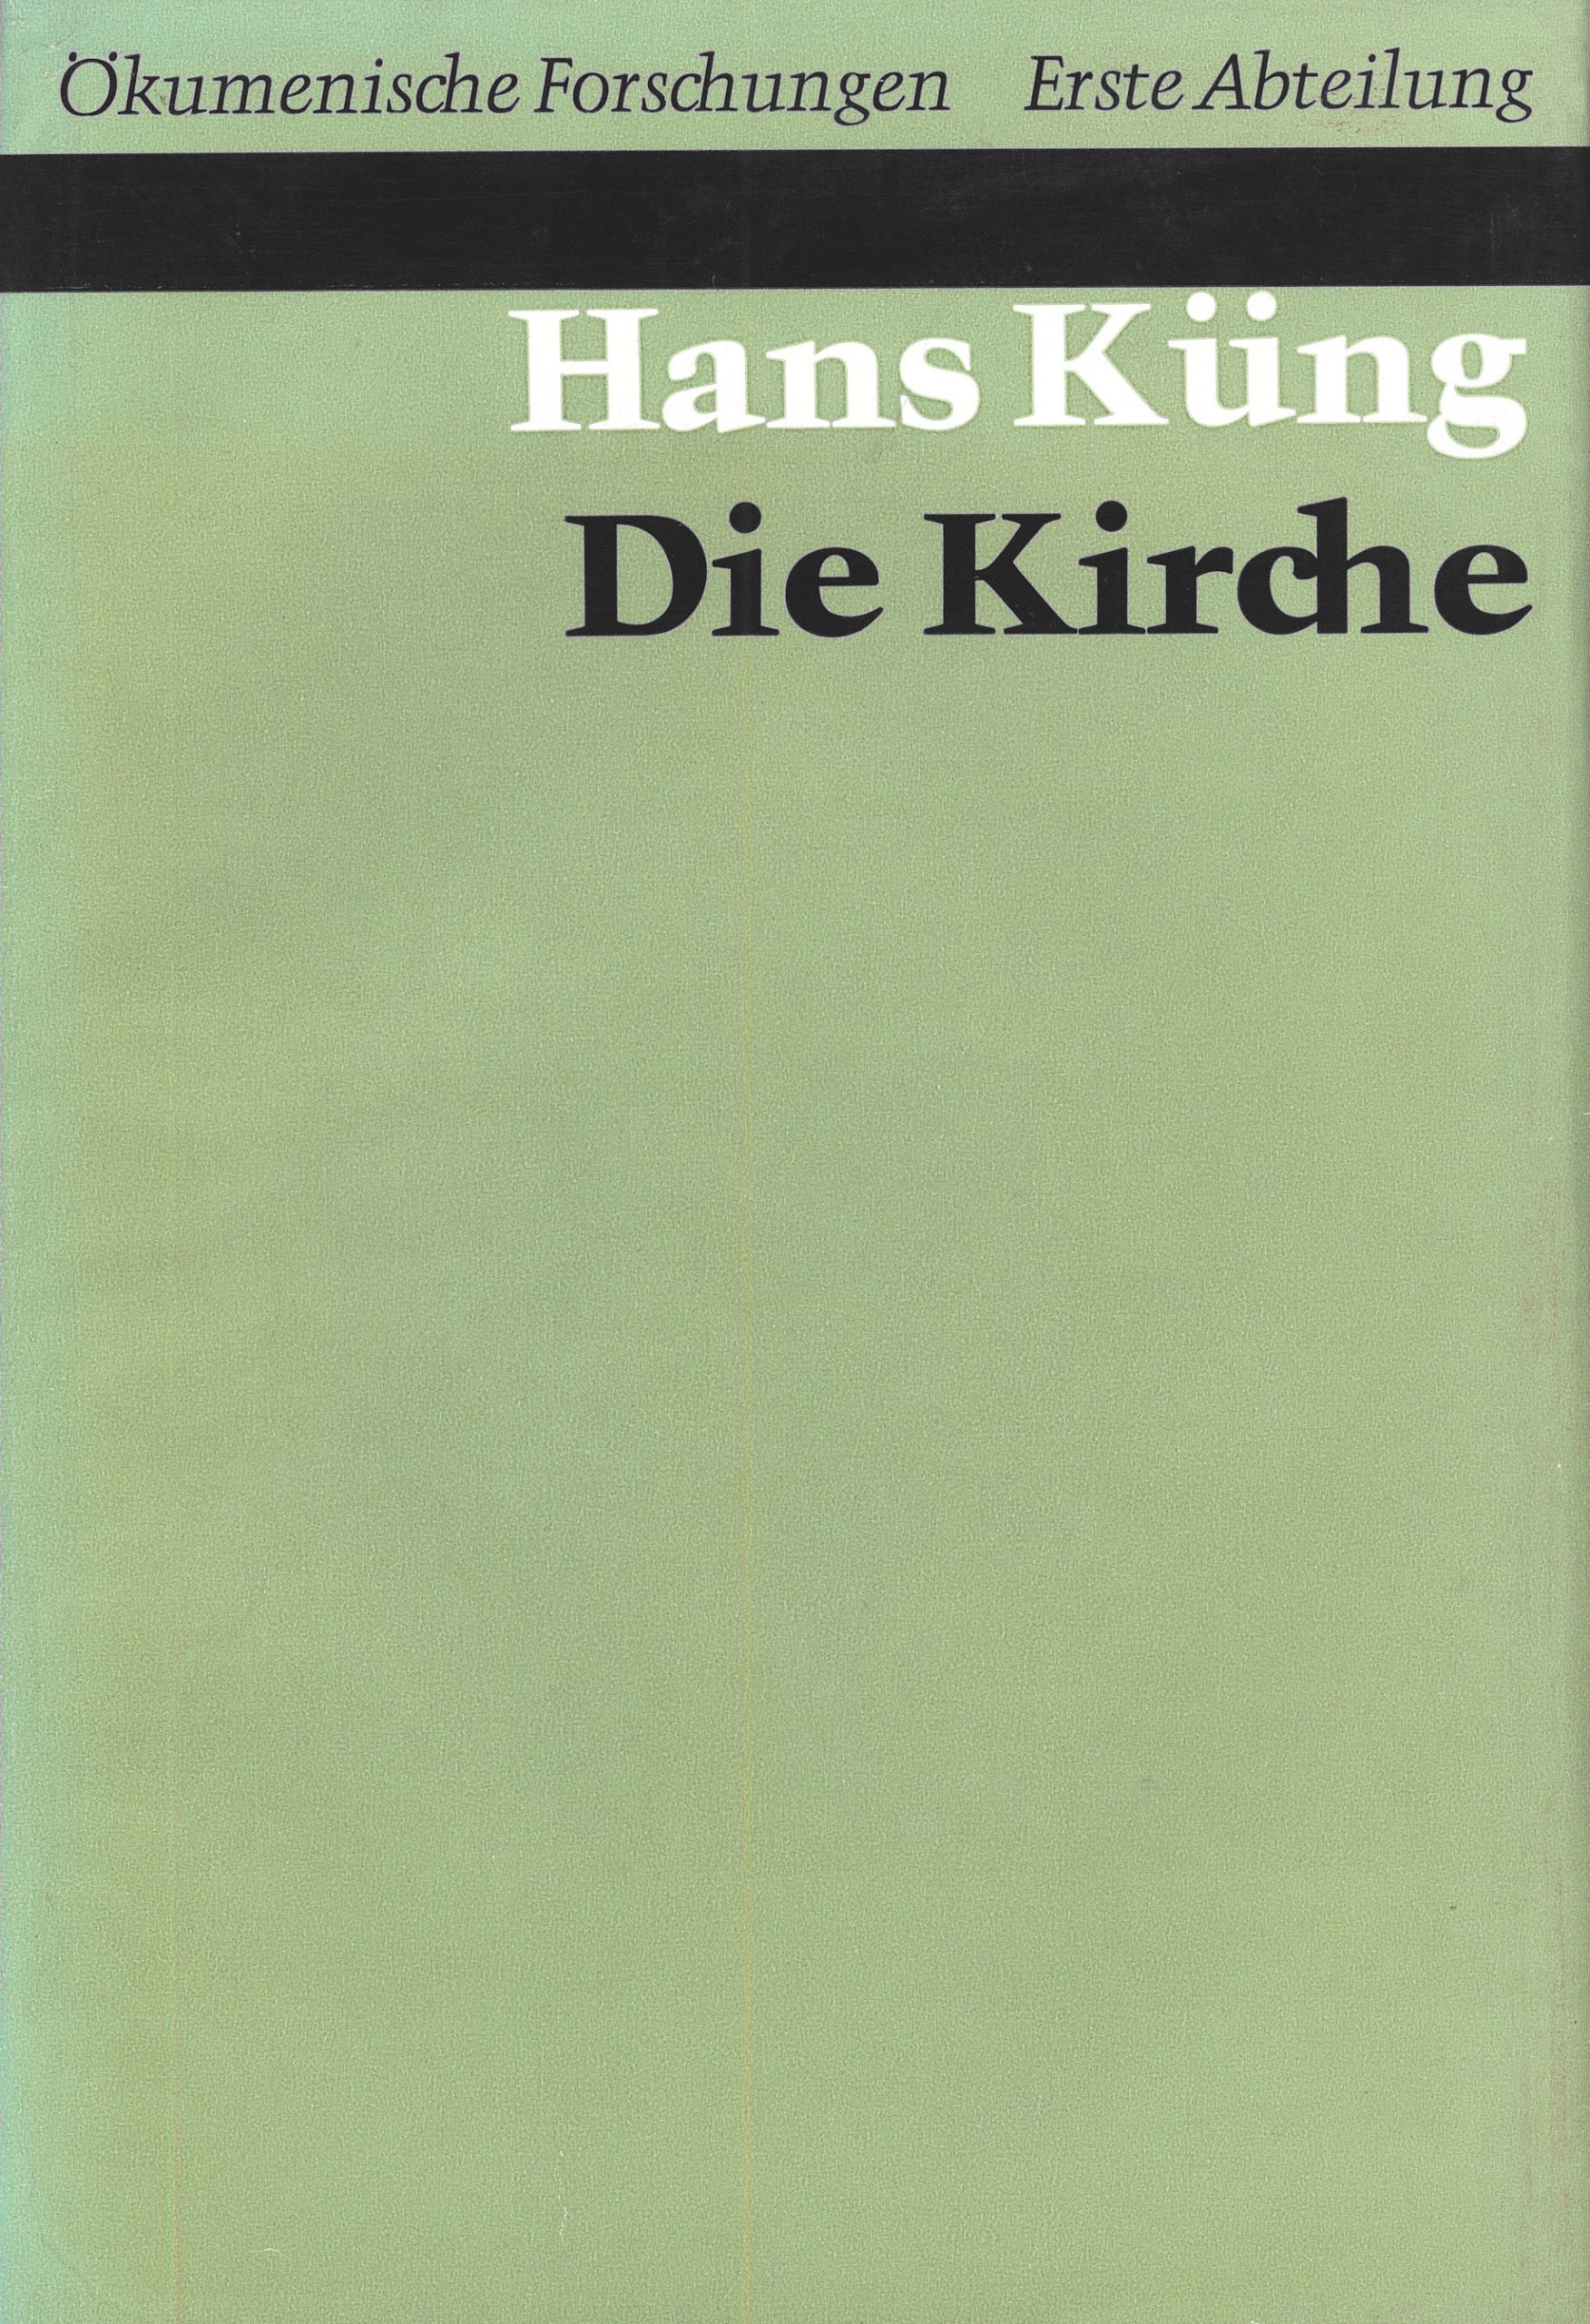 Das Bild zeigt die Vorderseite eines Buches mit der Aufschrift „Ökumenische Forschungen, Erste Abteilung, Hans Küng, Die Kirche“.